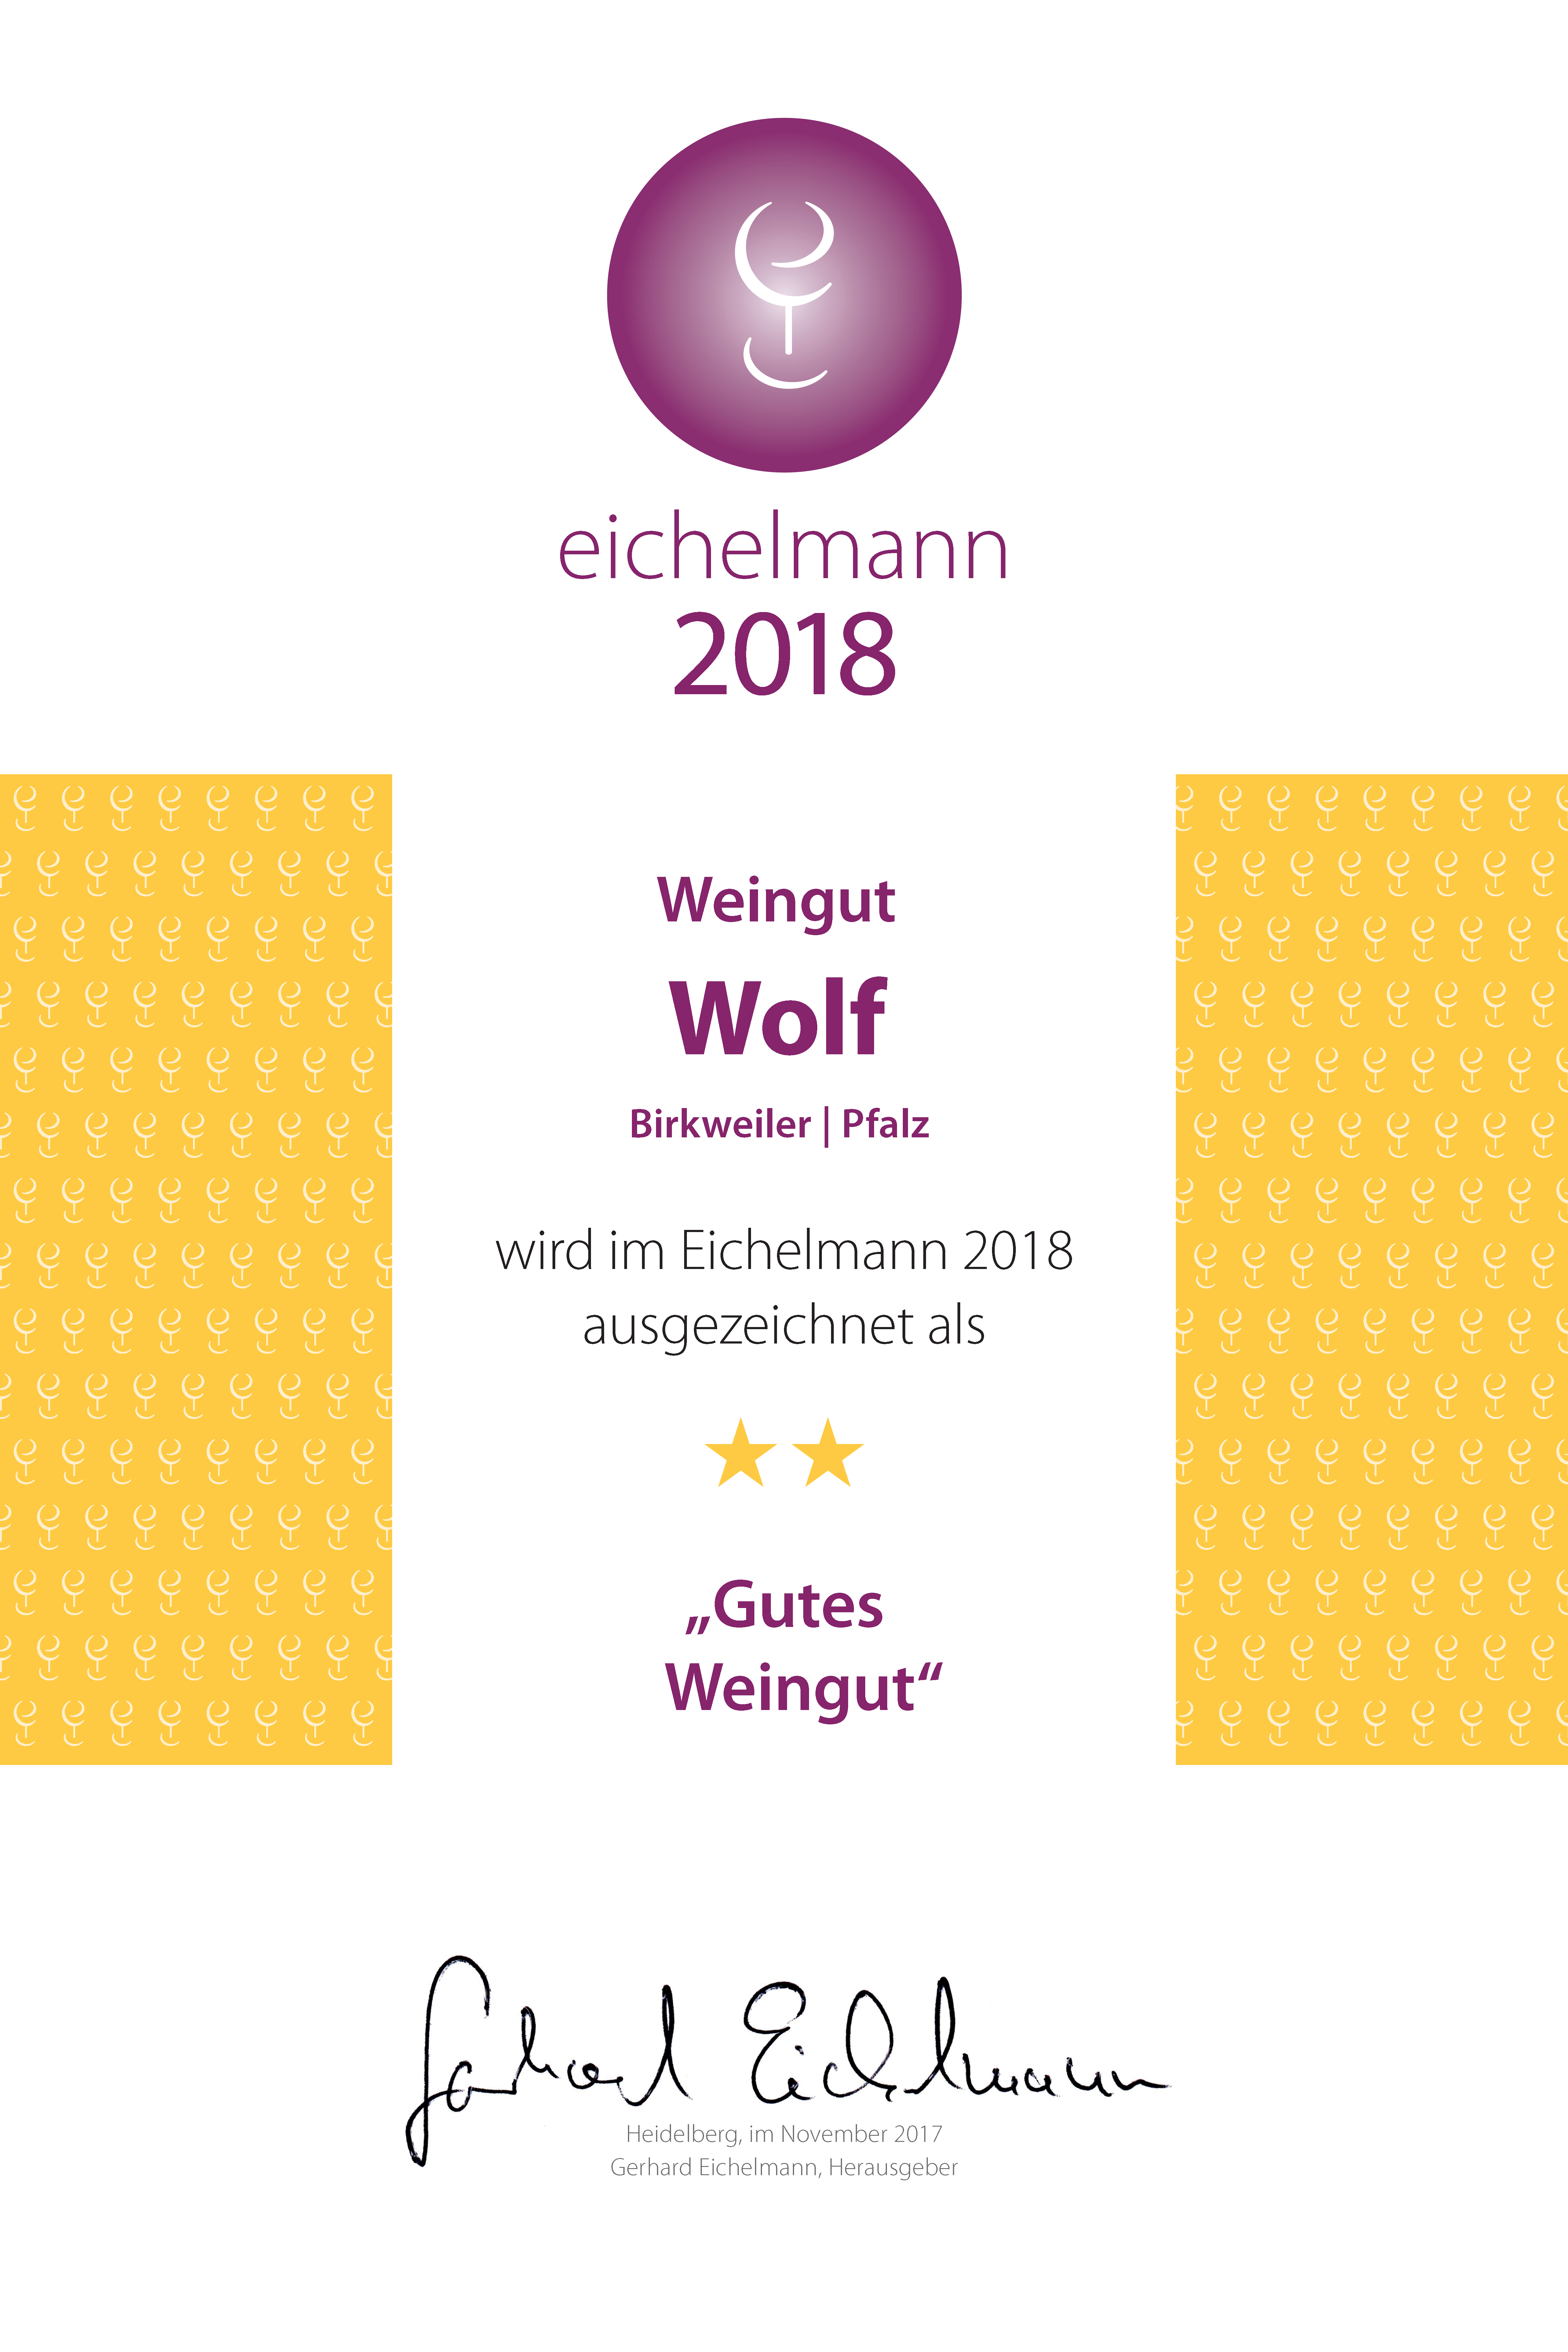 Eichelmann 2018 – “Gutes Weingut”